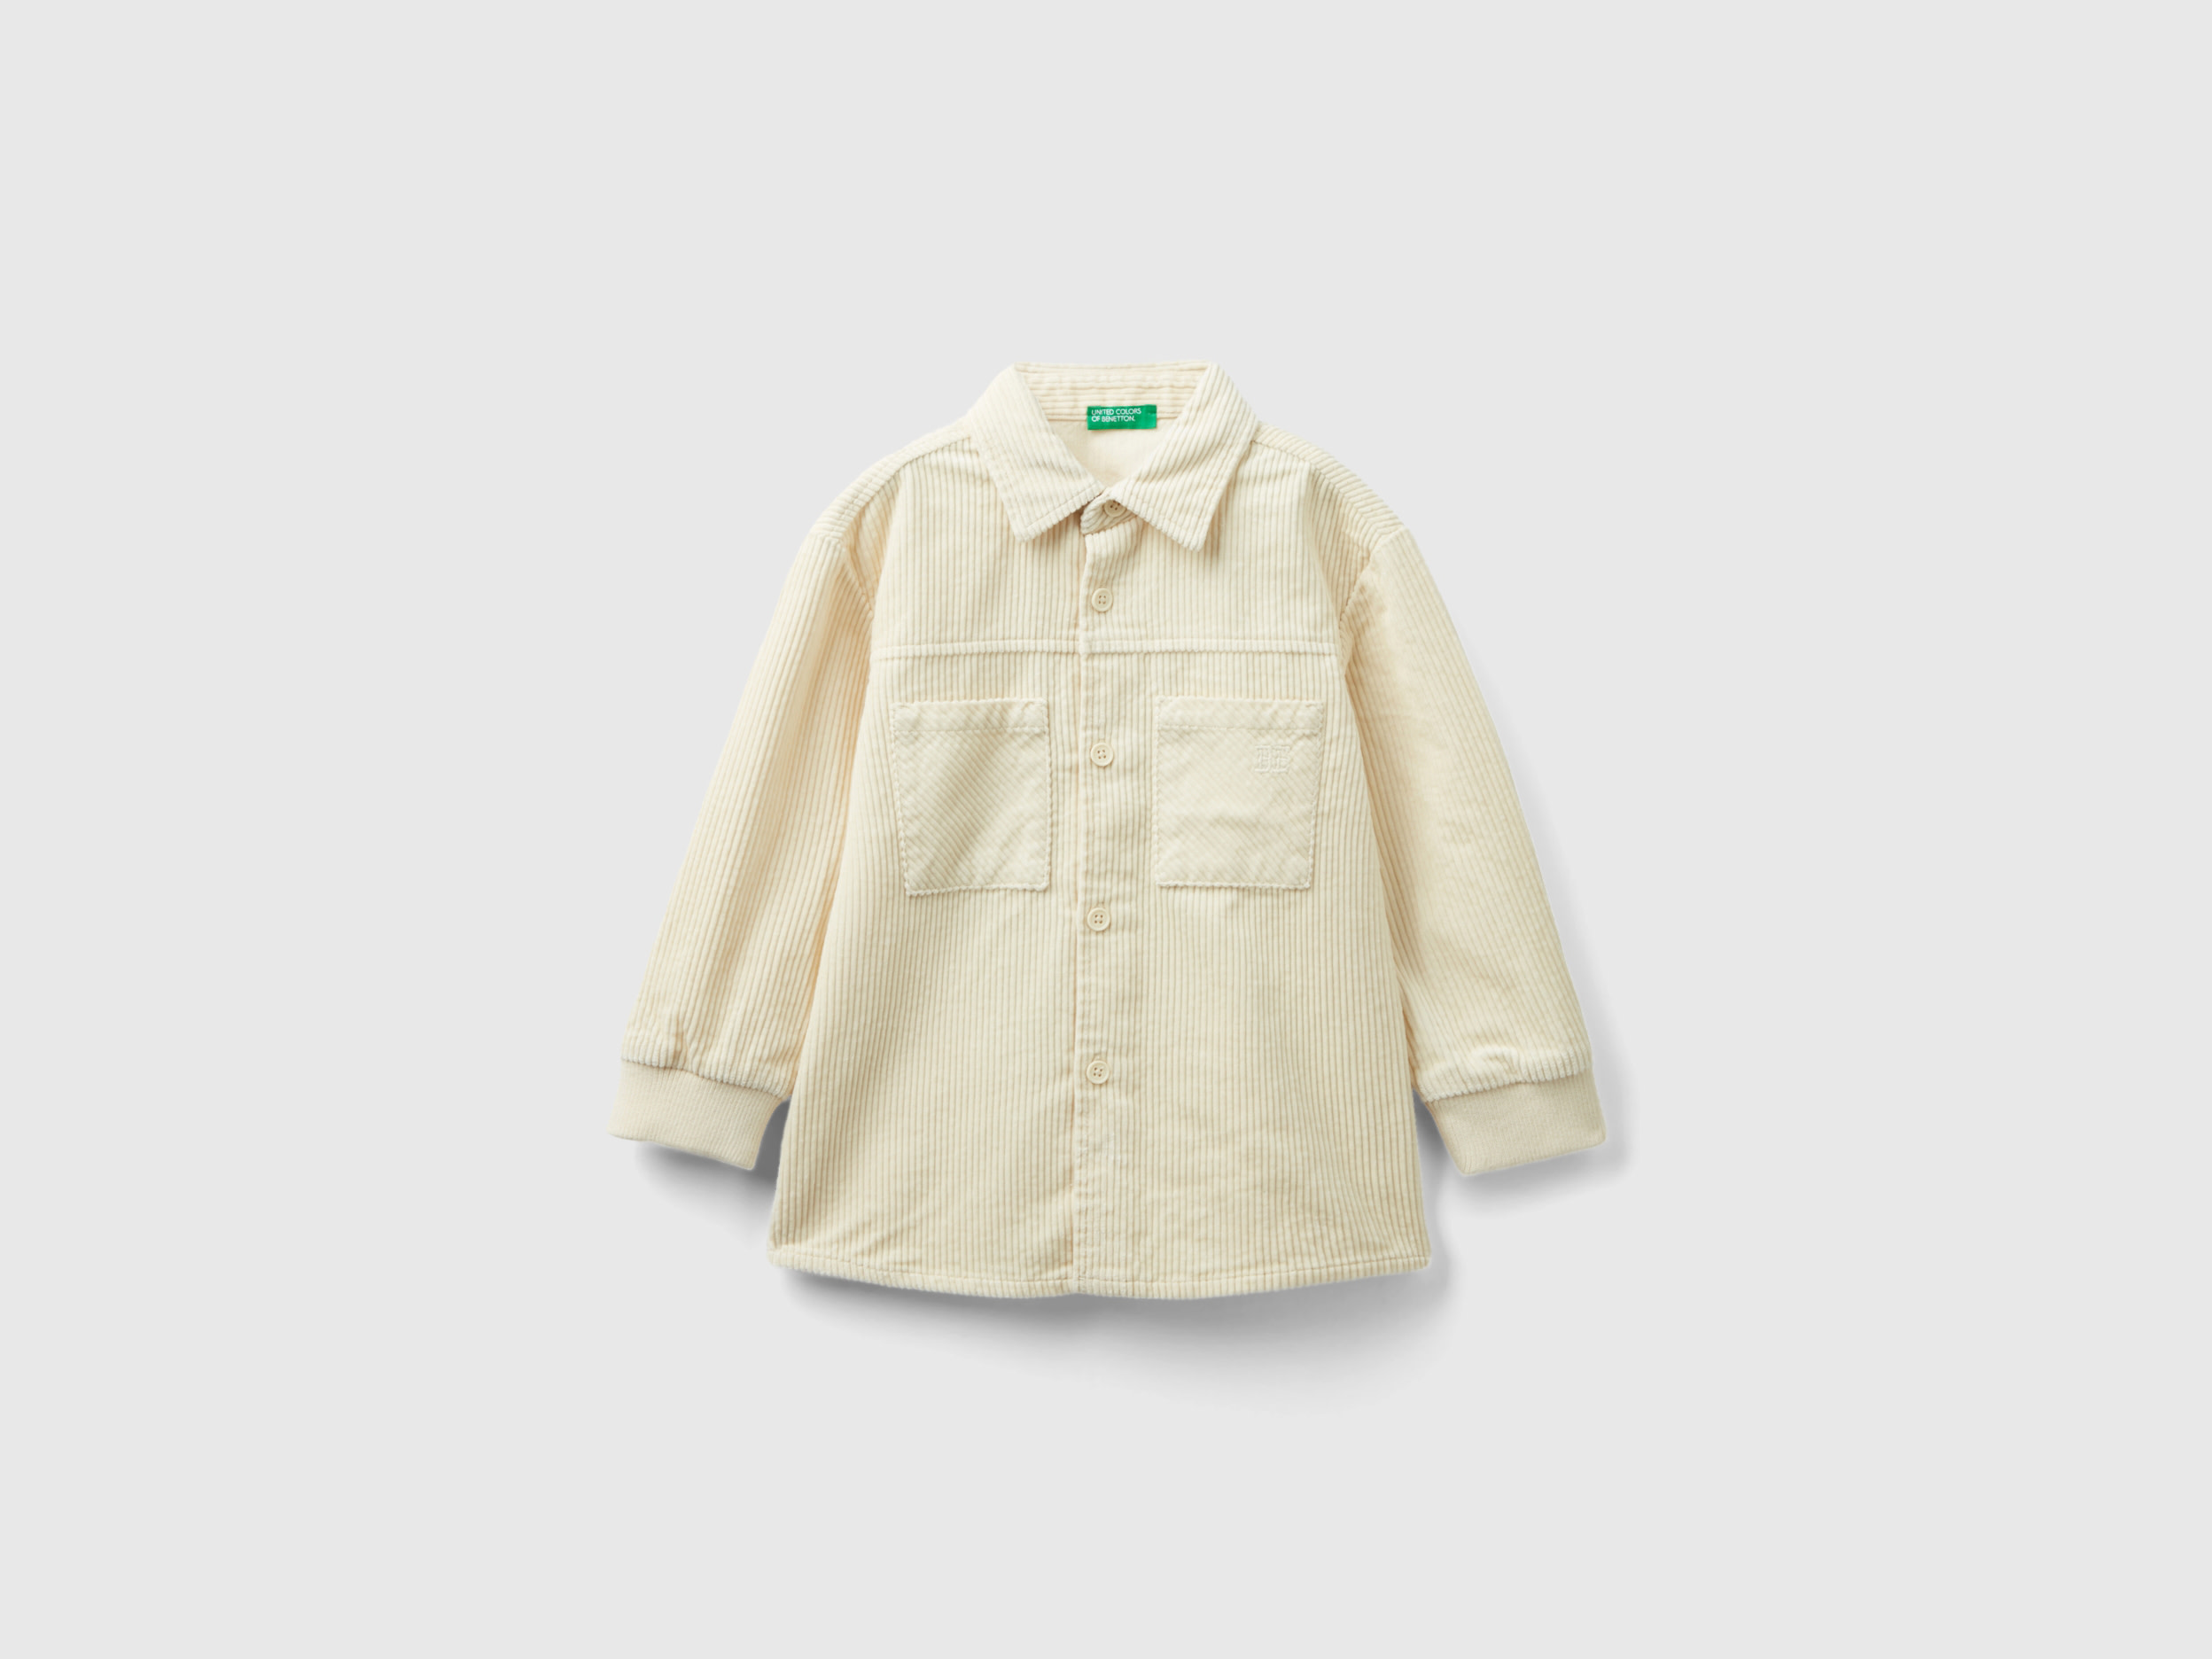 Benetton, Velvet Shirt With Pockets, size 3-4, Beige, Kids